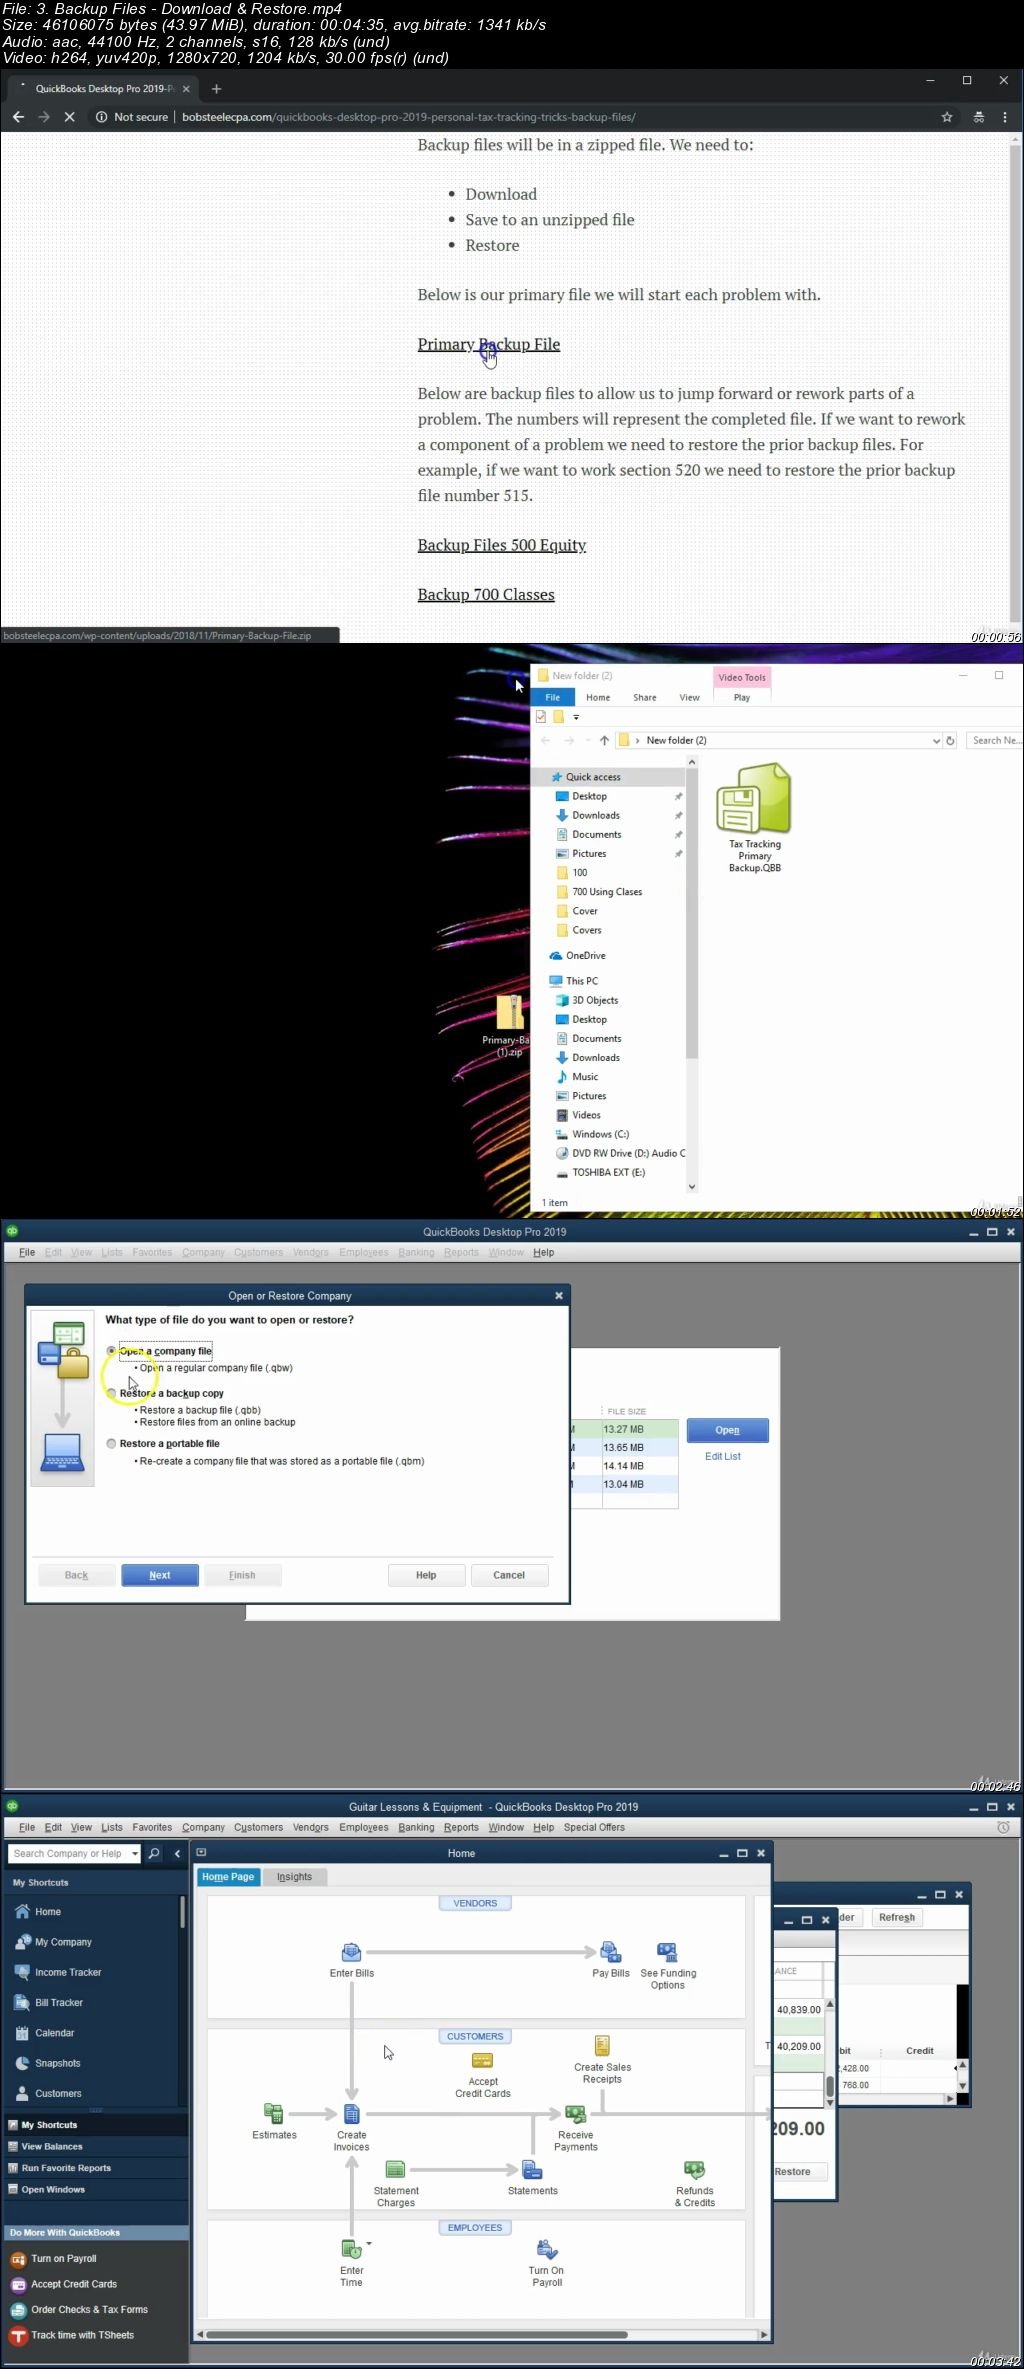 download quickbooks desktop pro 2017 torrent